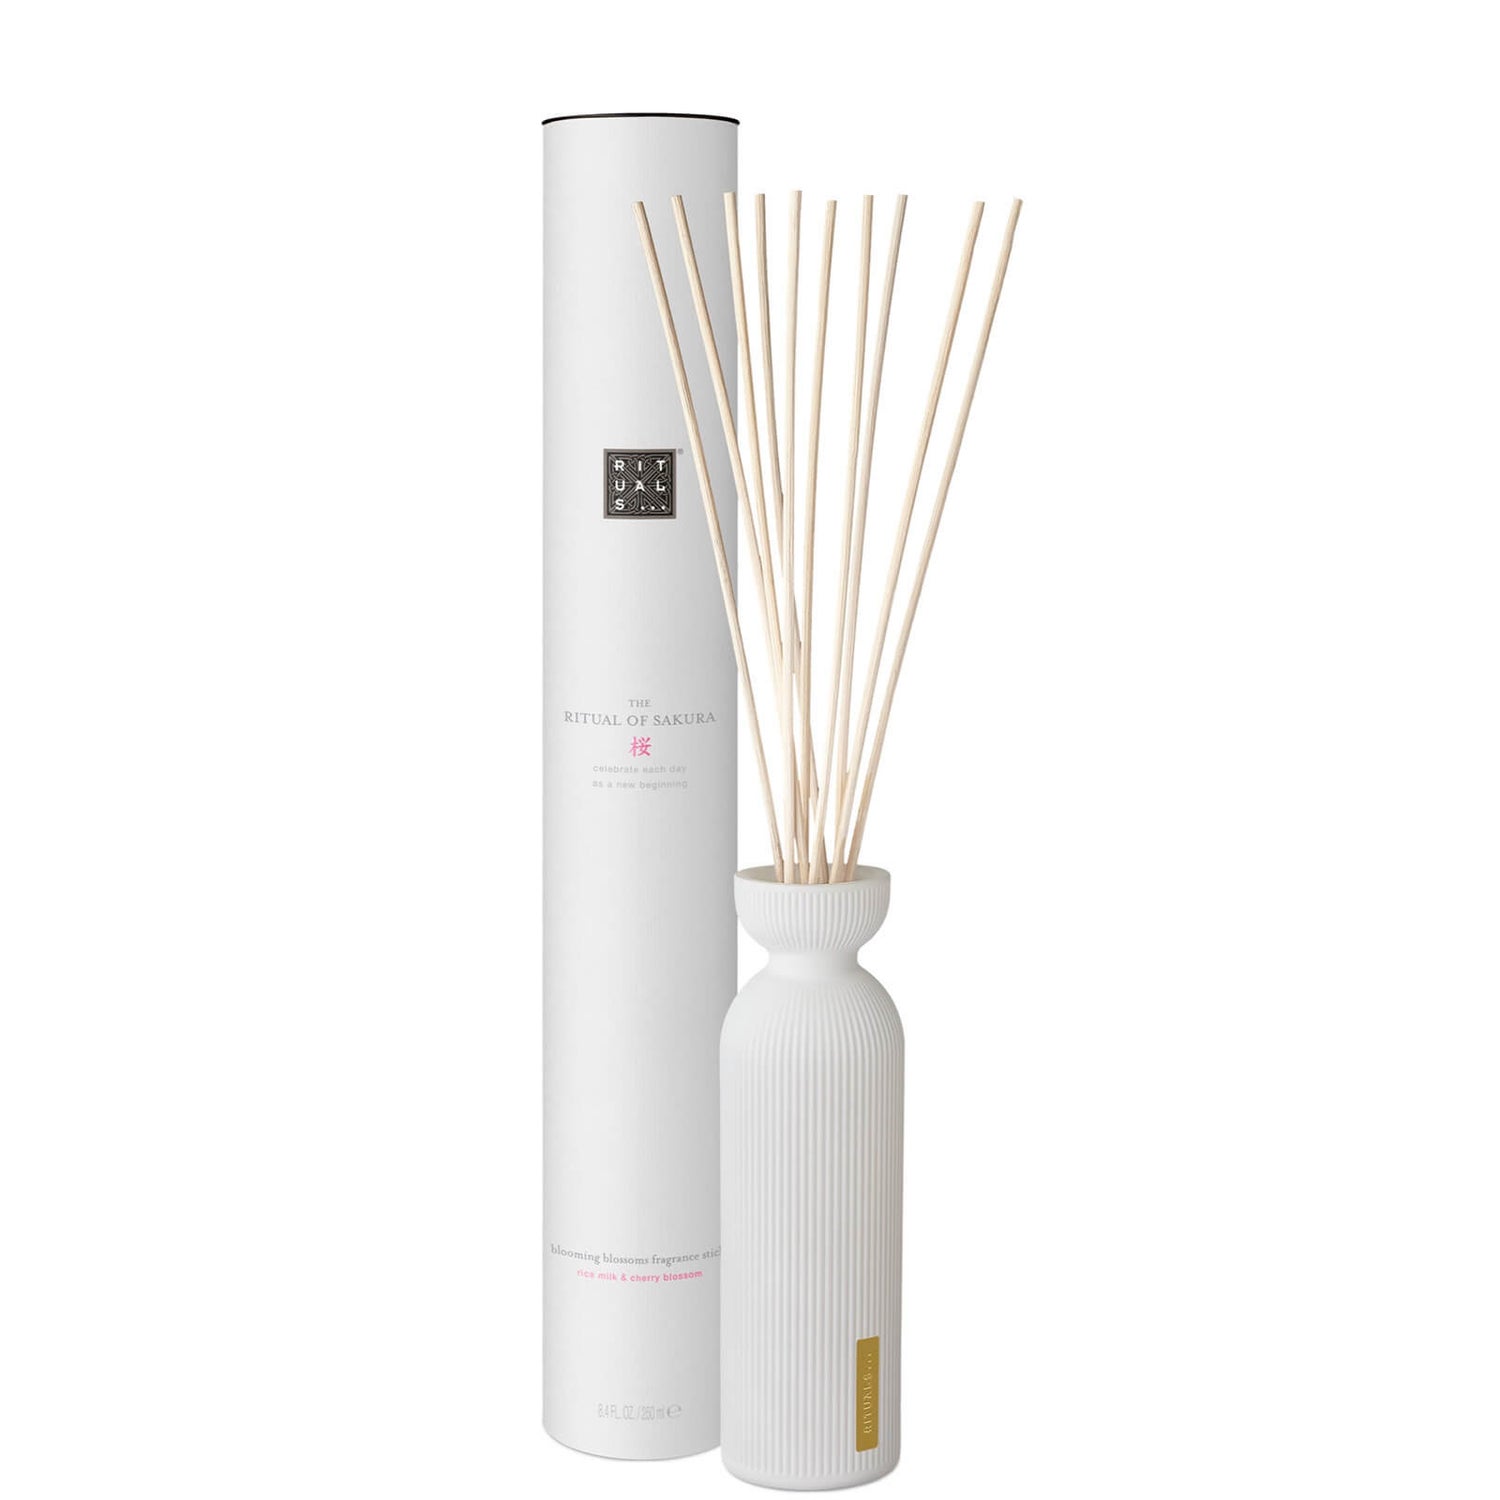 RITUALS The Ritual of Sakura Fragrance Sticks, bastoncini profumati 250 ml